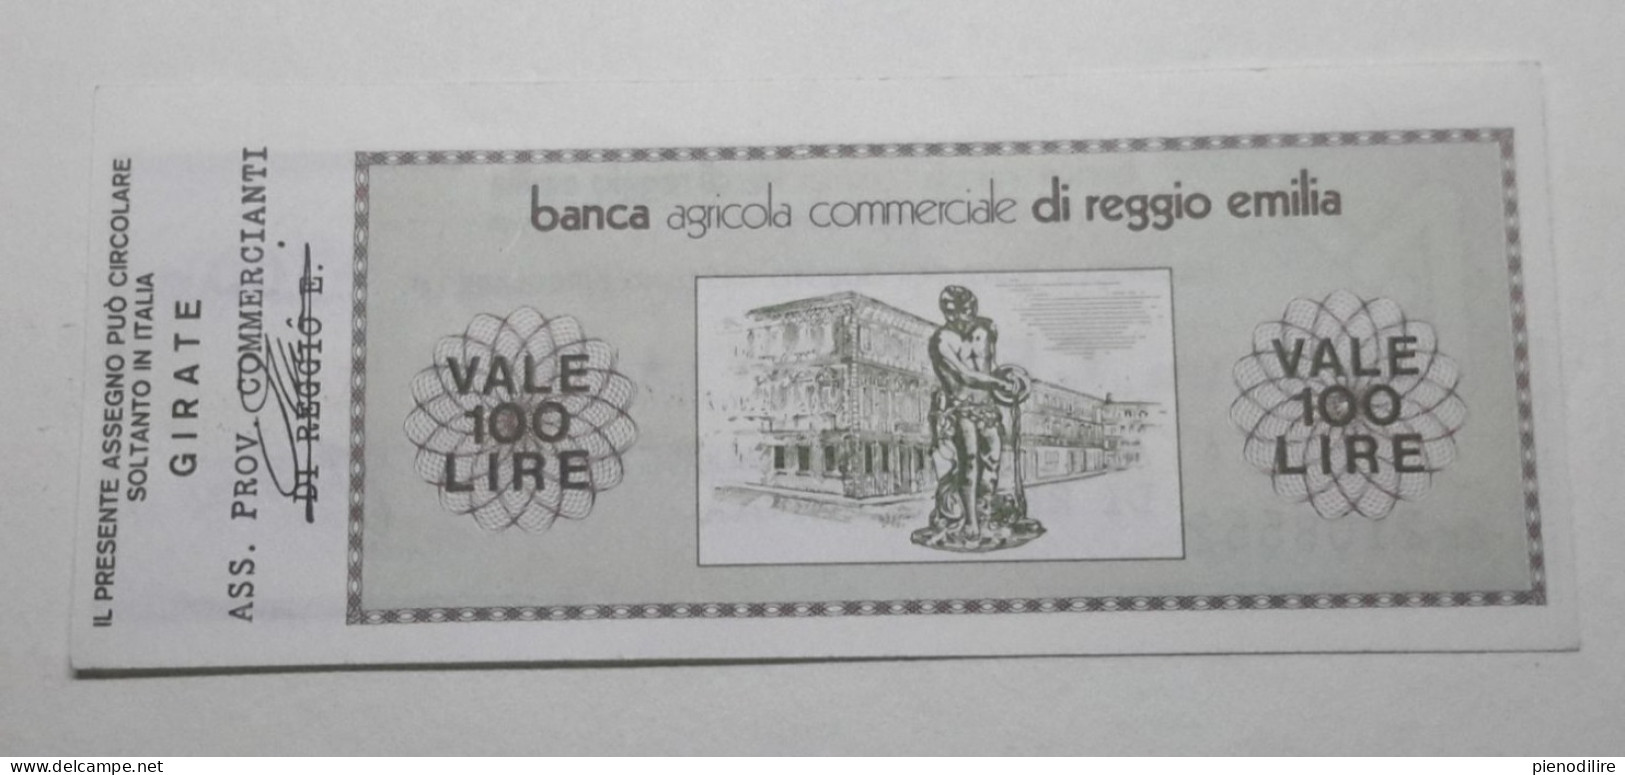 100 LIRE 3.3.1976 BANCA AGRICOLA COMMERCIALE REGGIO EMILIA (A.39) - [10] Checks And Mini-checks